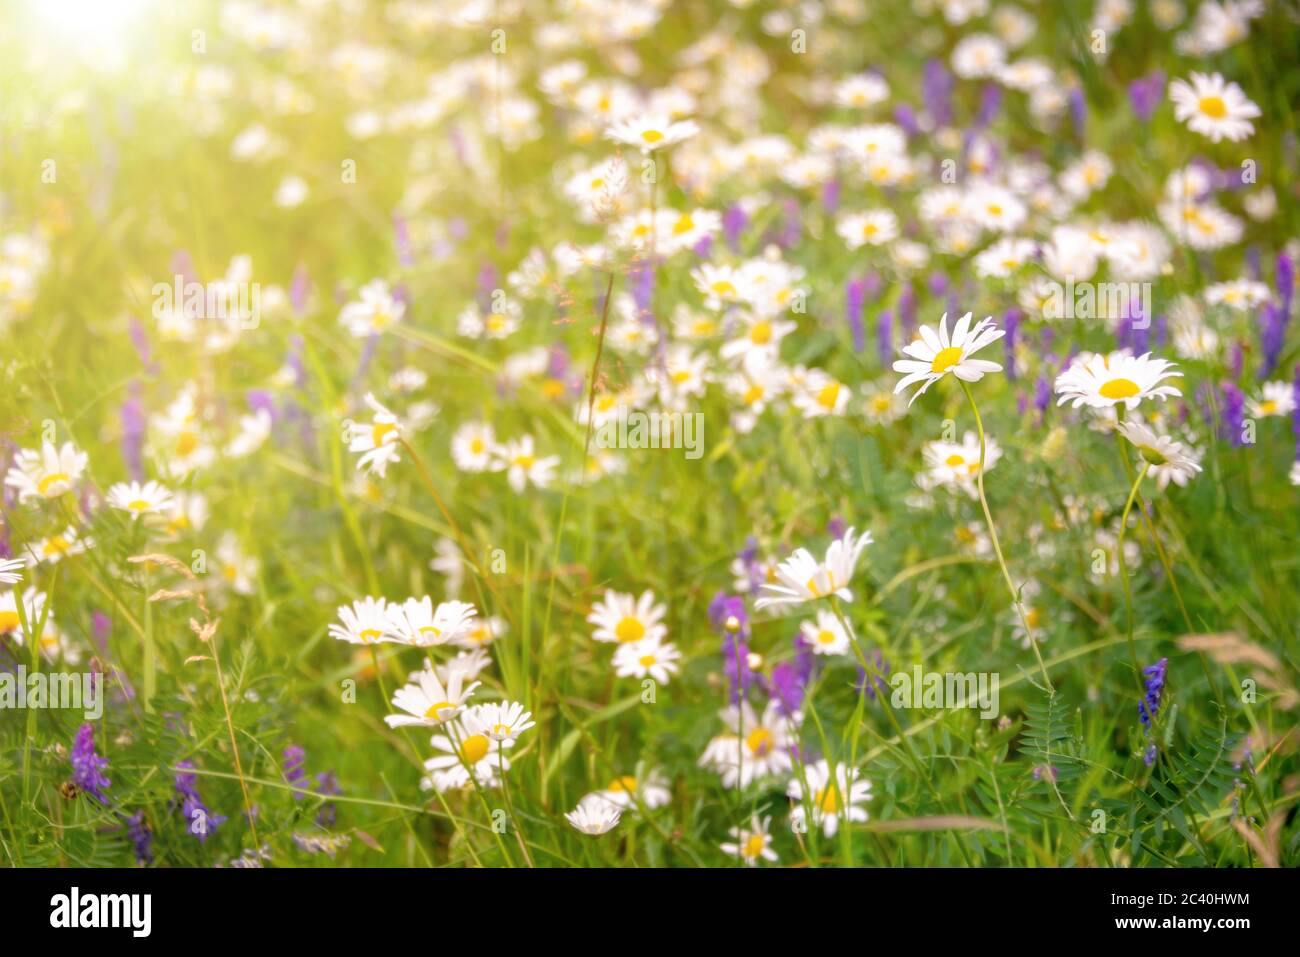 Sonnenschein auf einem Feld von Gänseblümchen und Wiild Blumen, Frühling und Sommer Natur Hintergrund Stockfoto